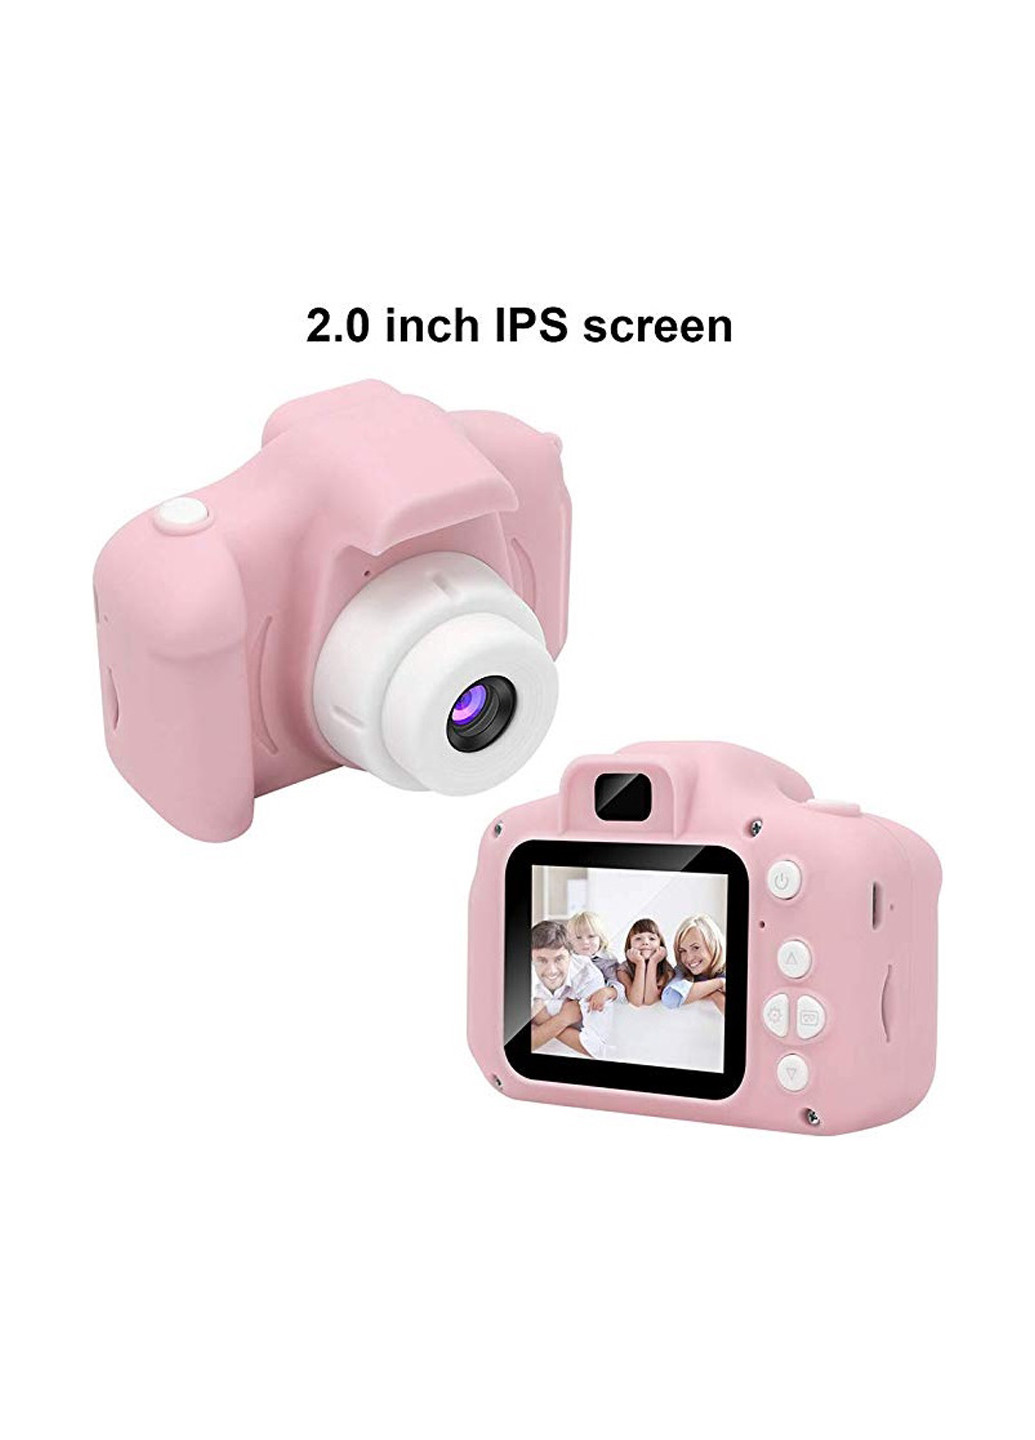 Цифровий дитячий фотоапарат KVR-001 рожевий XoKo kvr-001 розовый (140993756)